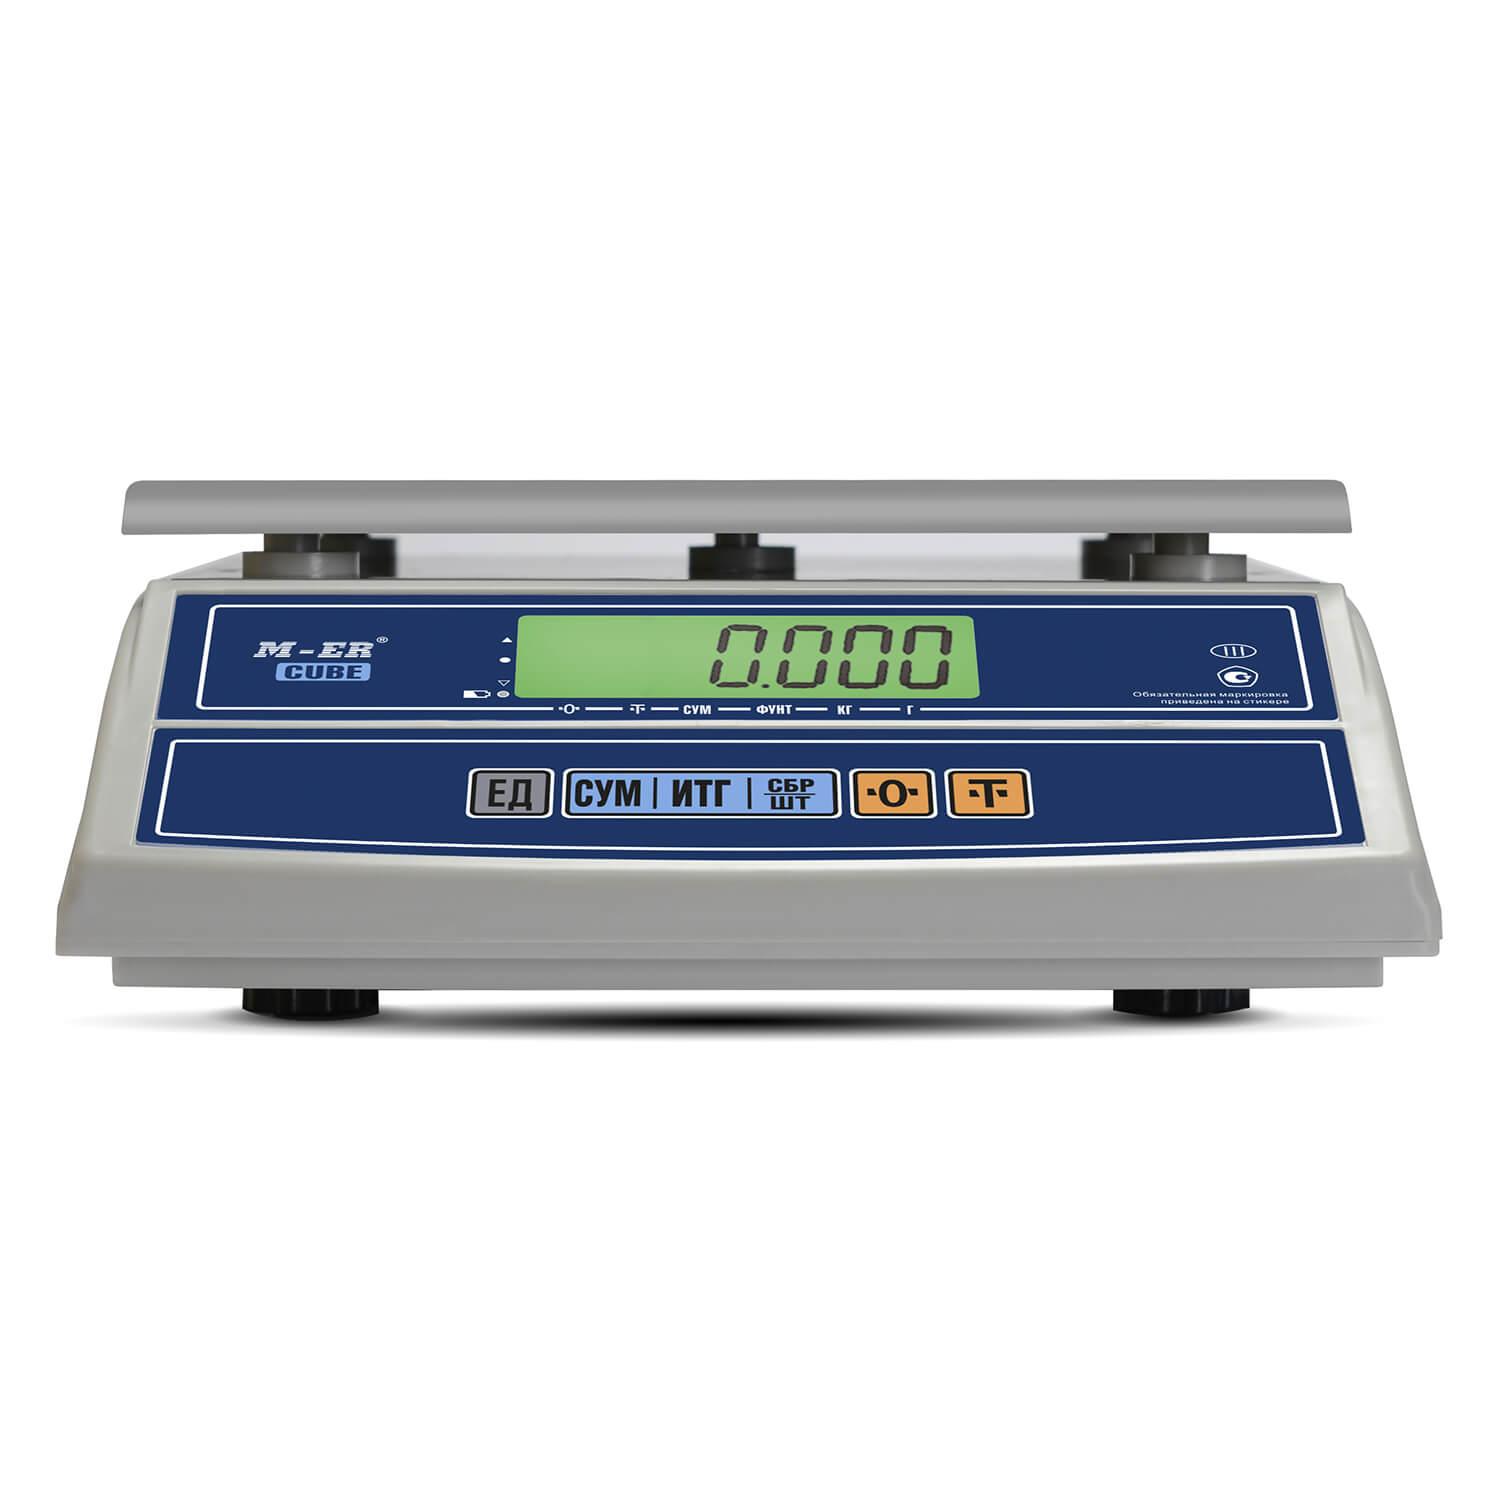 Фасовочные настольные весы M-ER 326 AF-15.2 "Cube" LCD RS232 (3148)